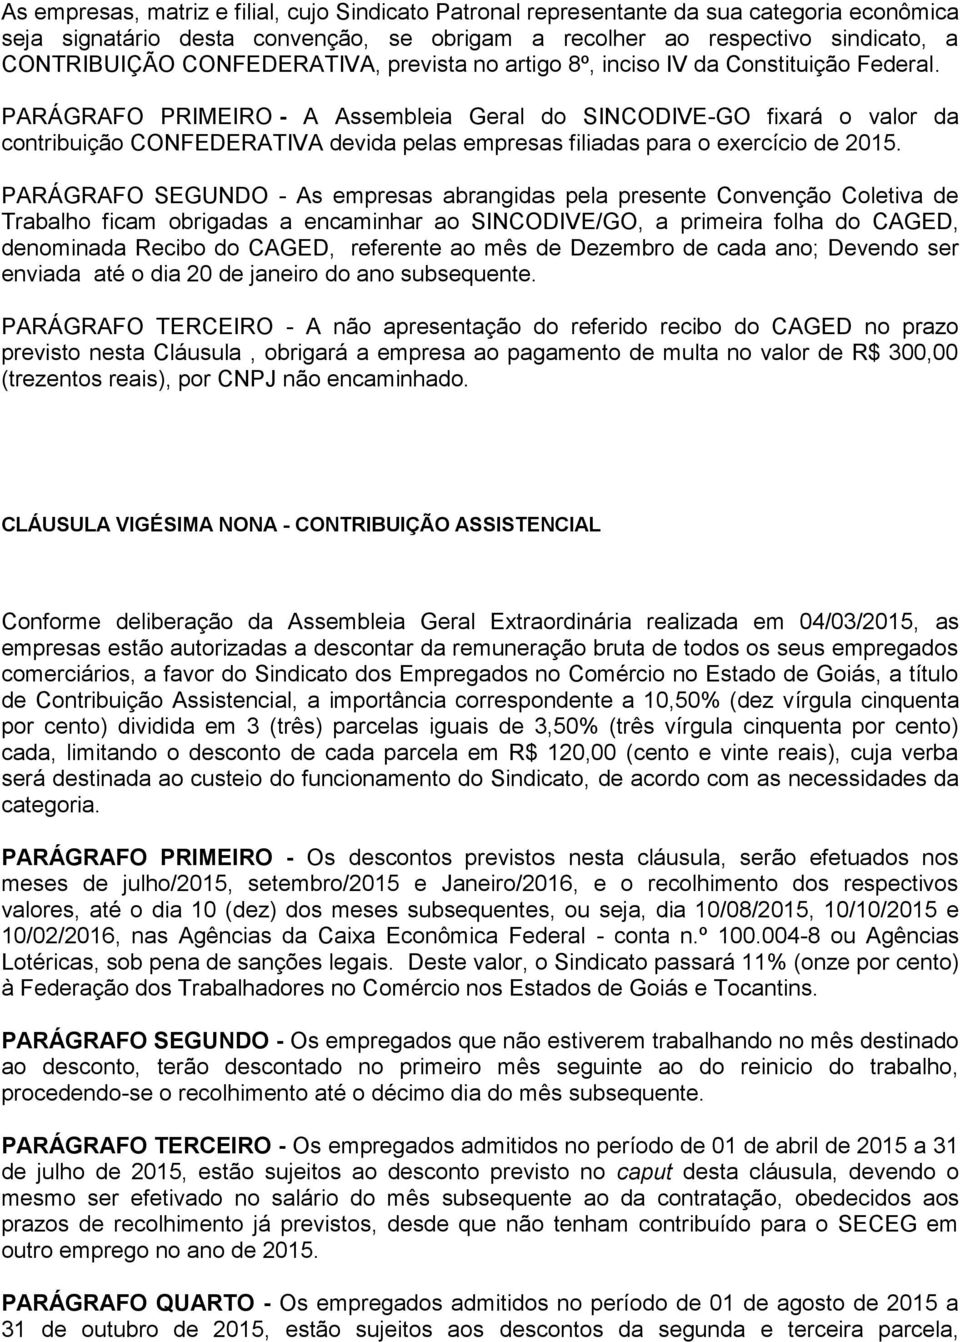 PARÁGRAFO PRIMEIRO - A Assembleia Geral do SINCODIVE-GO fixará o valor da contribuição CONFEDERATIVA devida pelas empresas filiadas para o exercício de 2015.